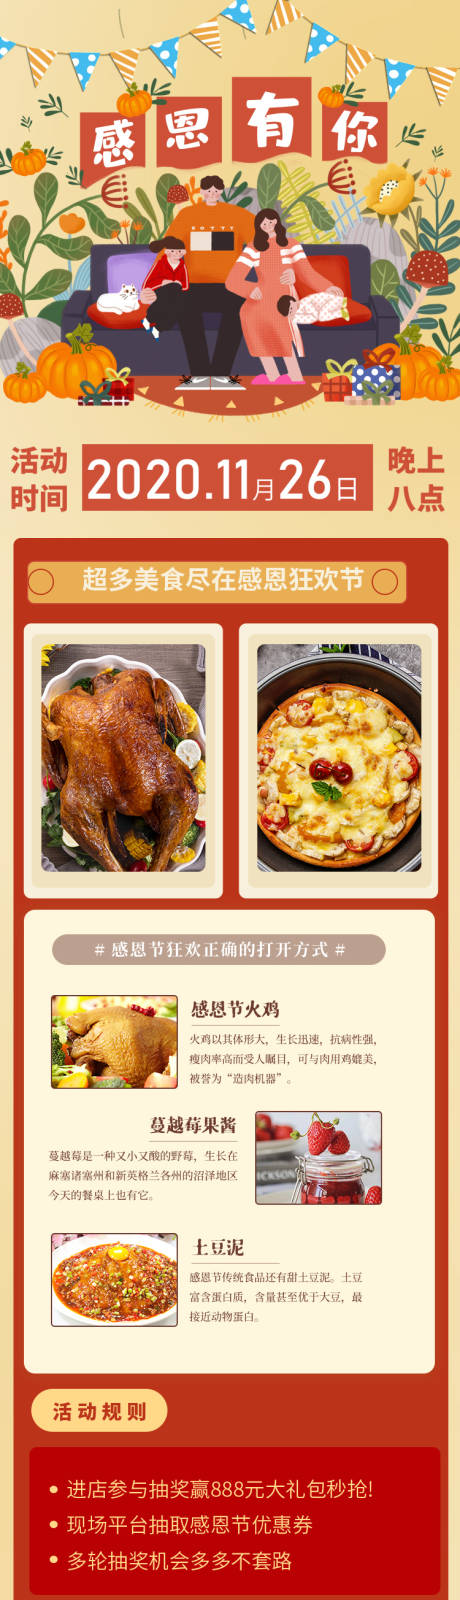 感恩节美食狂欢宣传长图海报